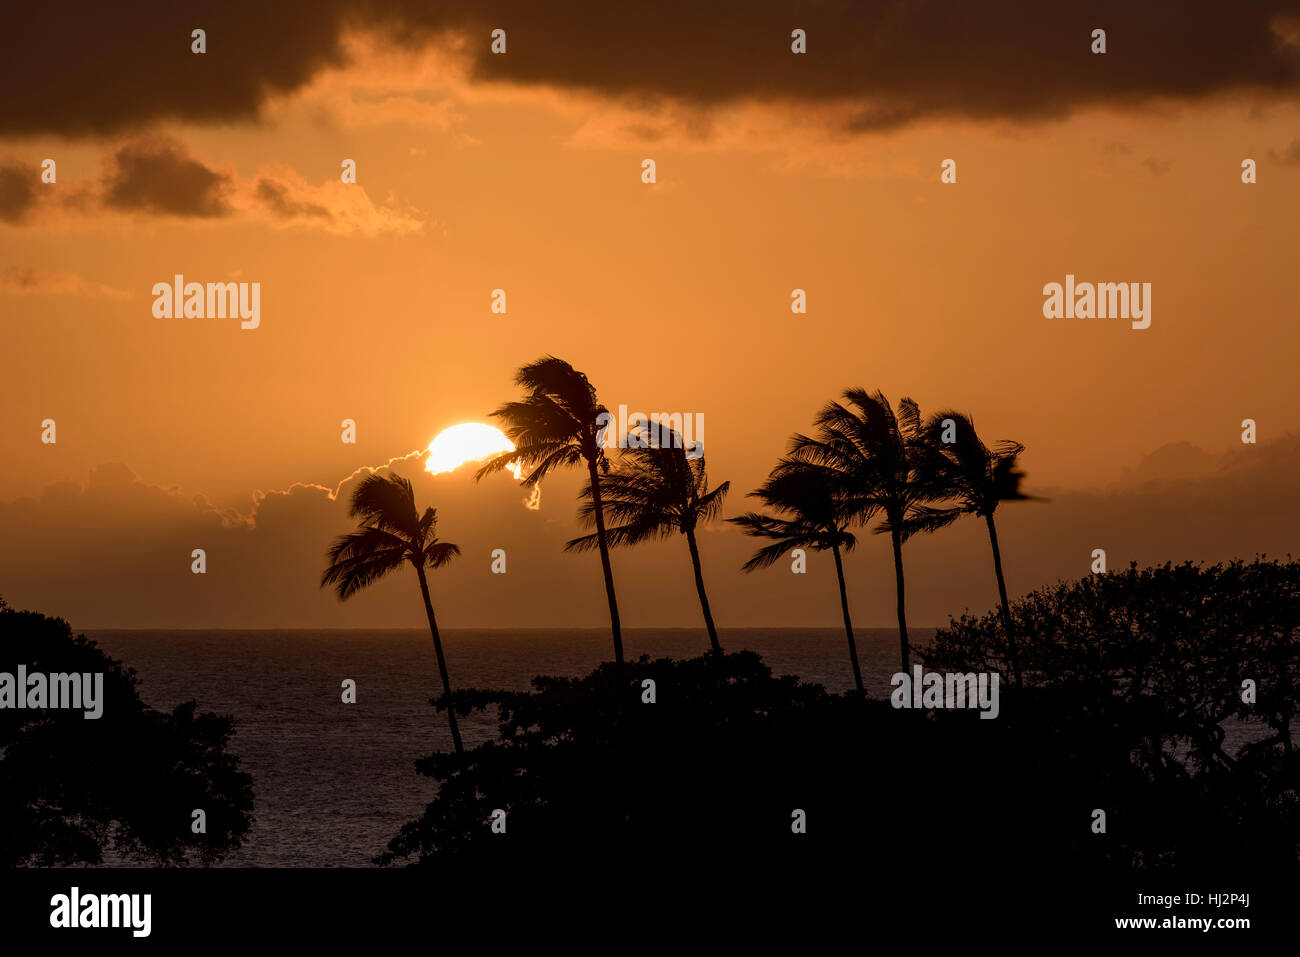 Le soleil se couche derrière un groupe de palmiers. Banque D'Images